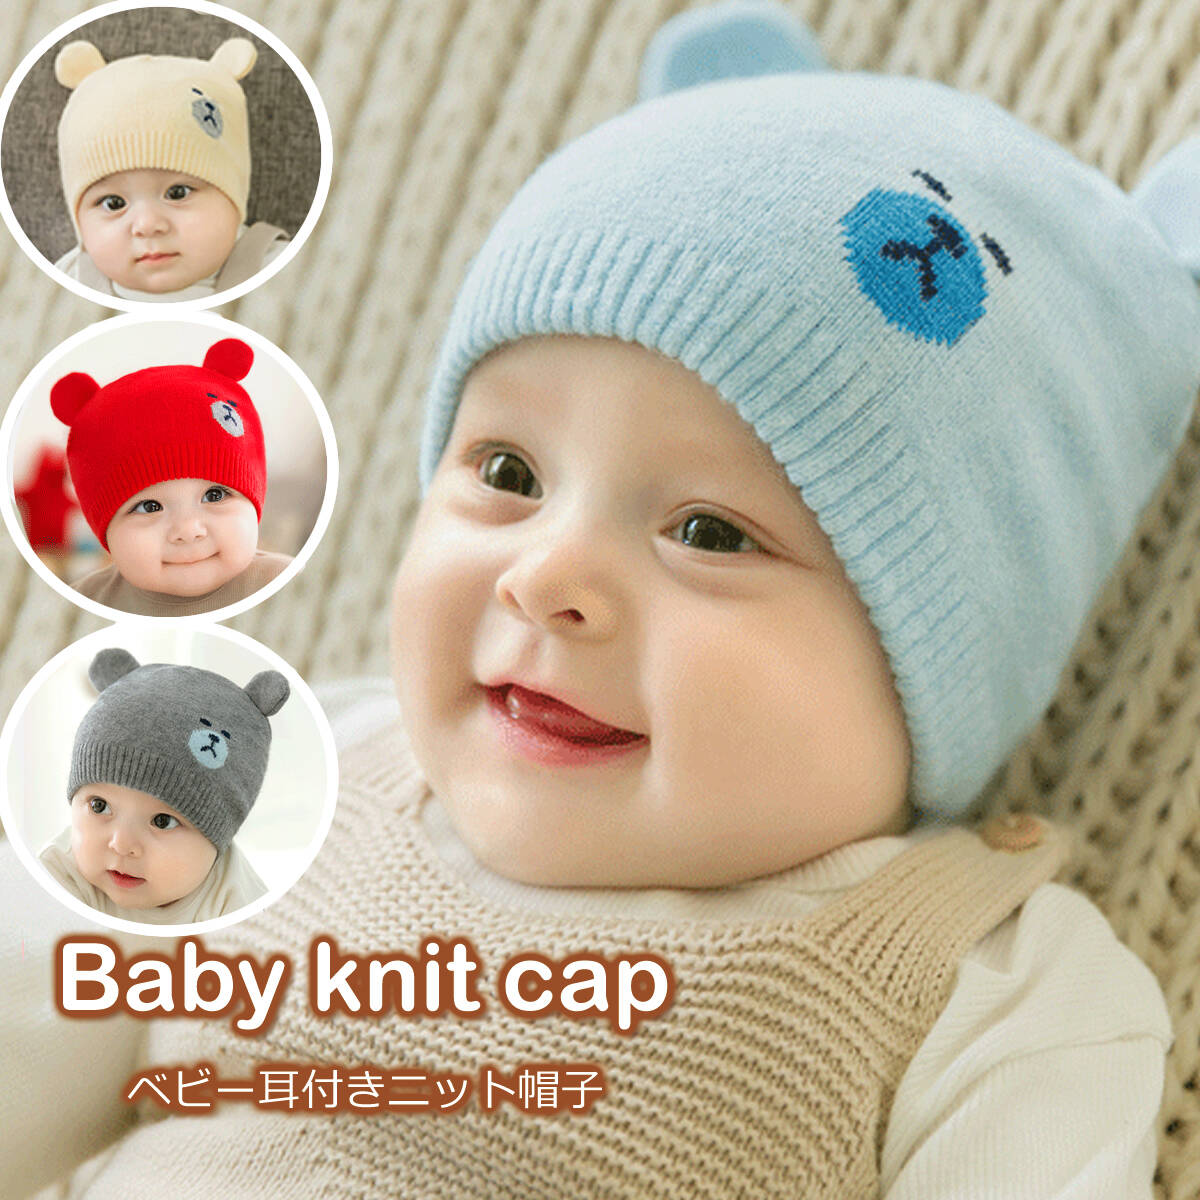 帽子 ニット帽 ベビー 子供 赤ちゃん 幼児 耳付き くま耳 男の子 女の子 グレー ベージュ レッド ブルー 冬